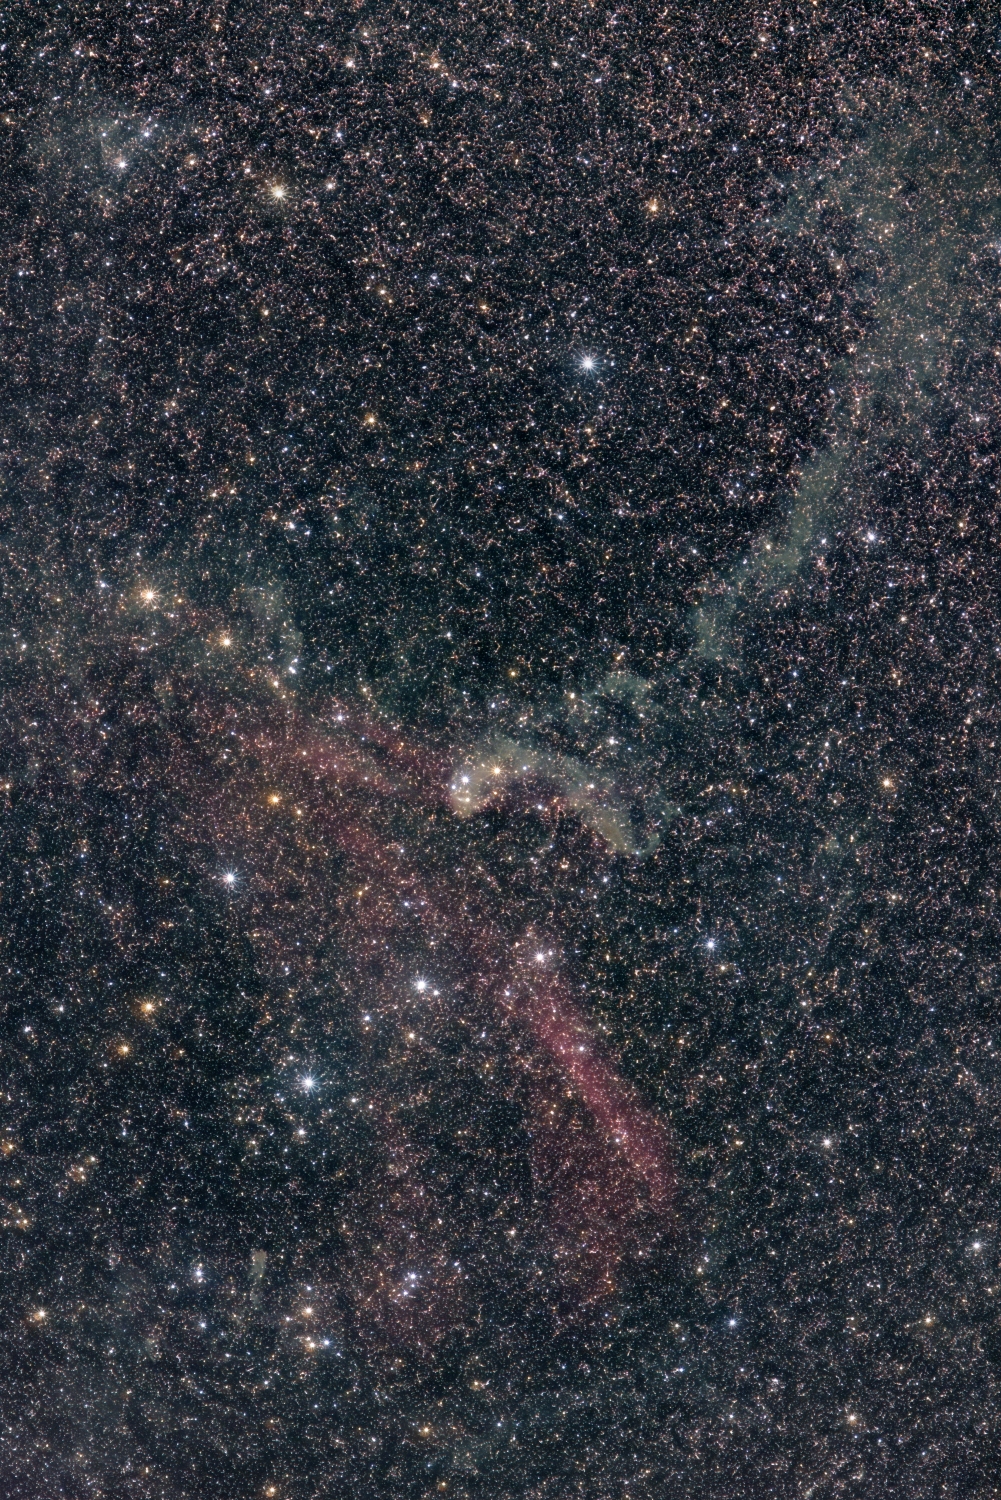 Sh2-126, LBN 430, LBN 432, LBN 435, LBN 437, LBN 438, LBN 440, LBN 448, LBN 442, NGC 7330